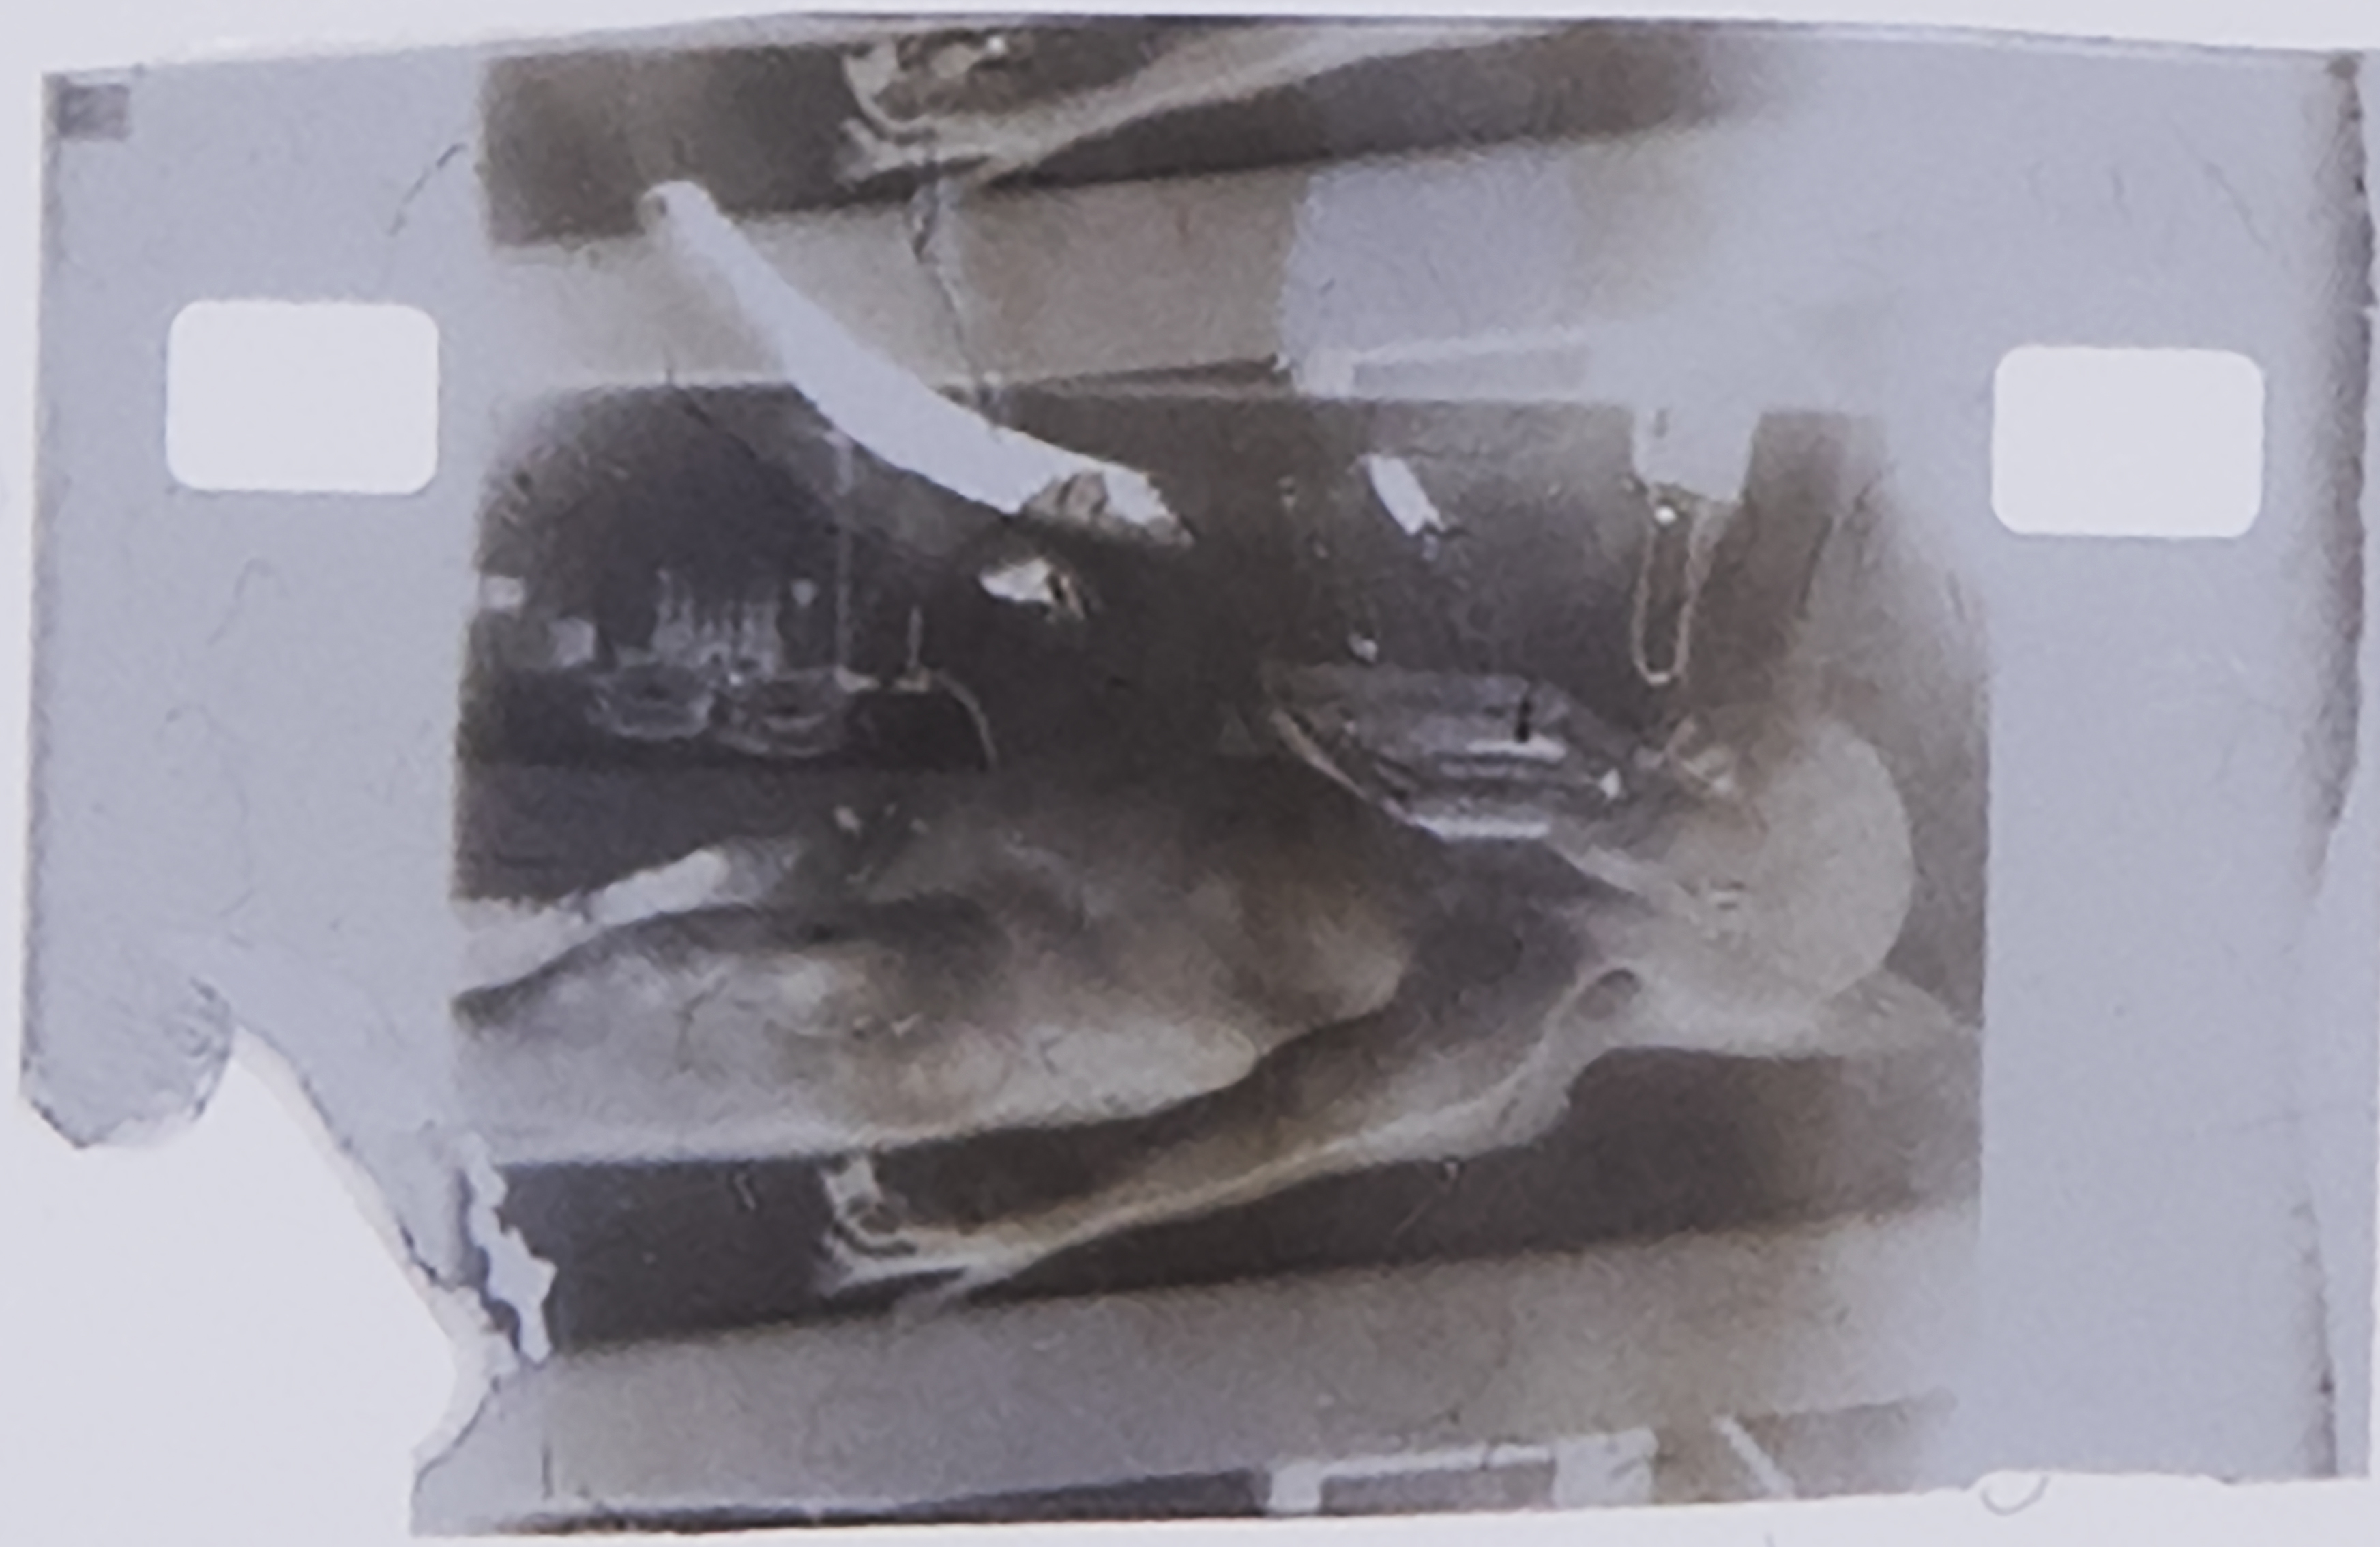 Frame de negativo da suposta autópsia de um extraterrestre ocorrida em 1947.